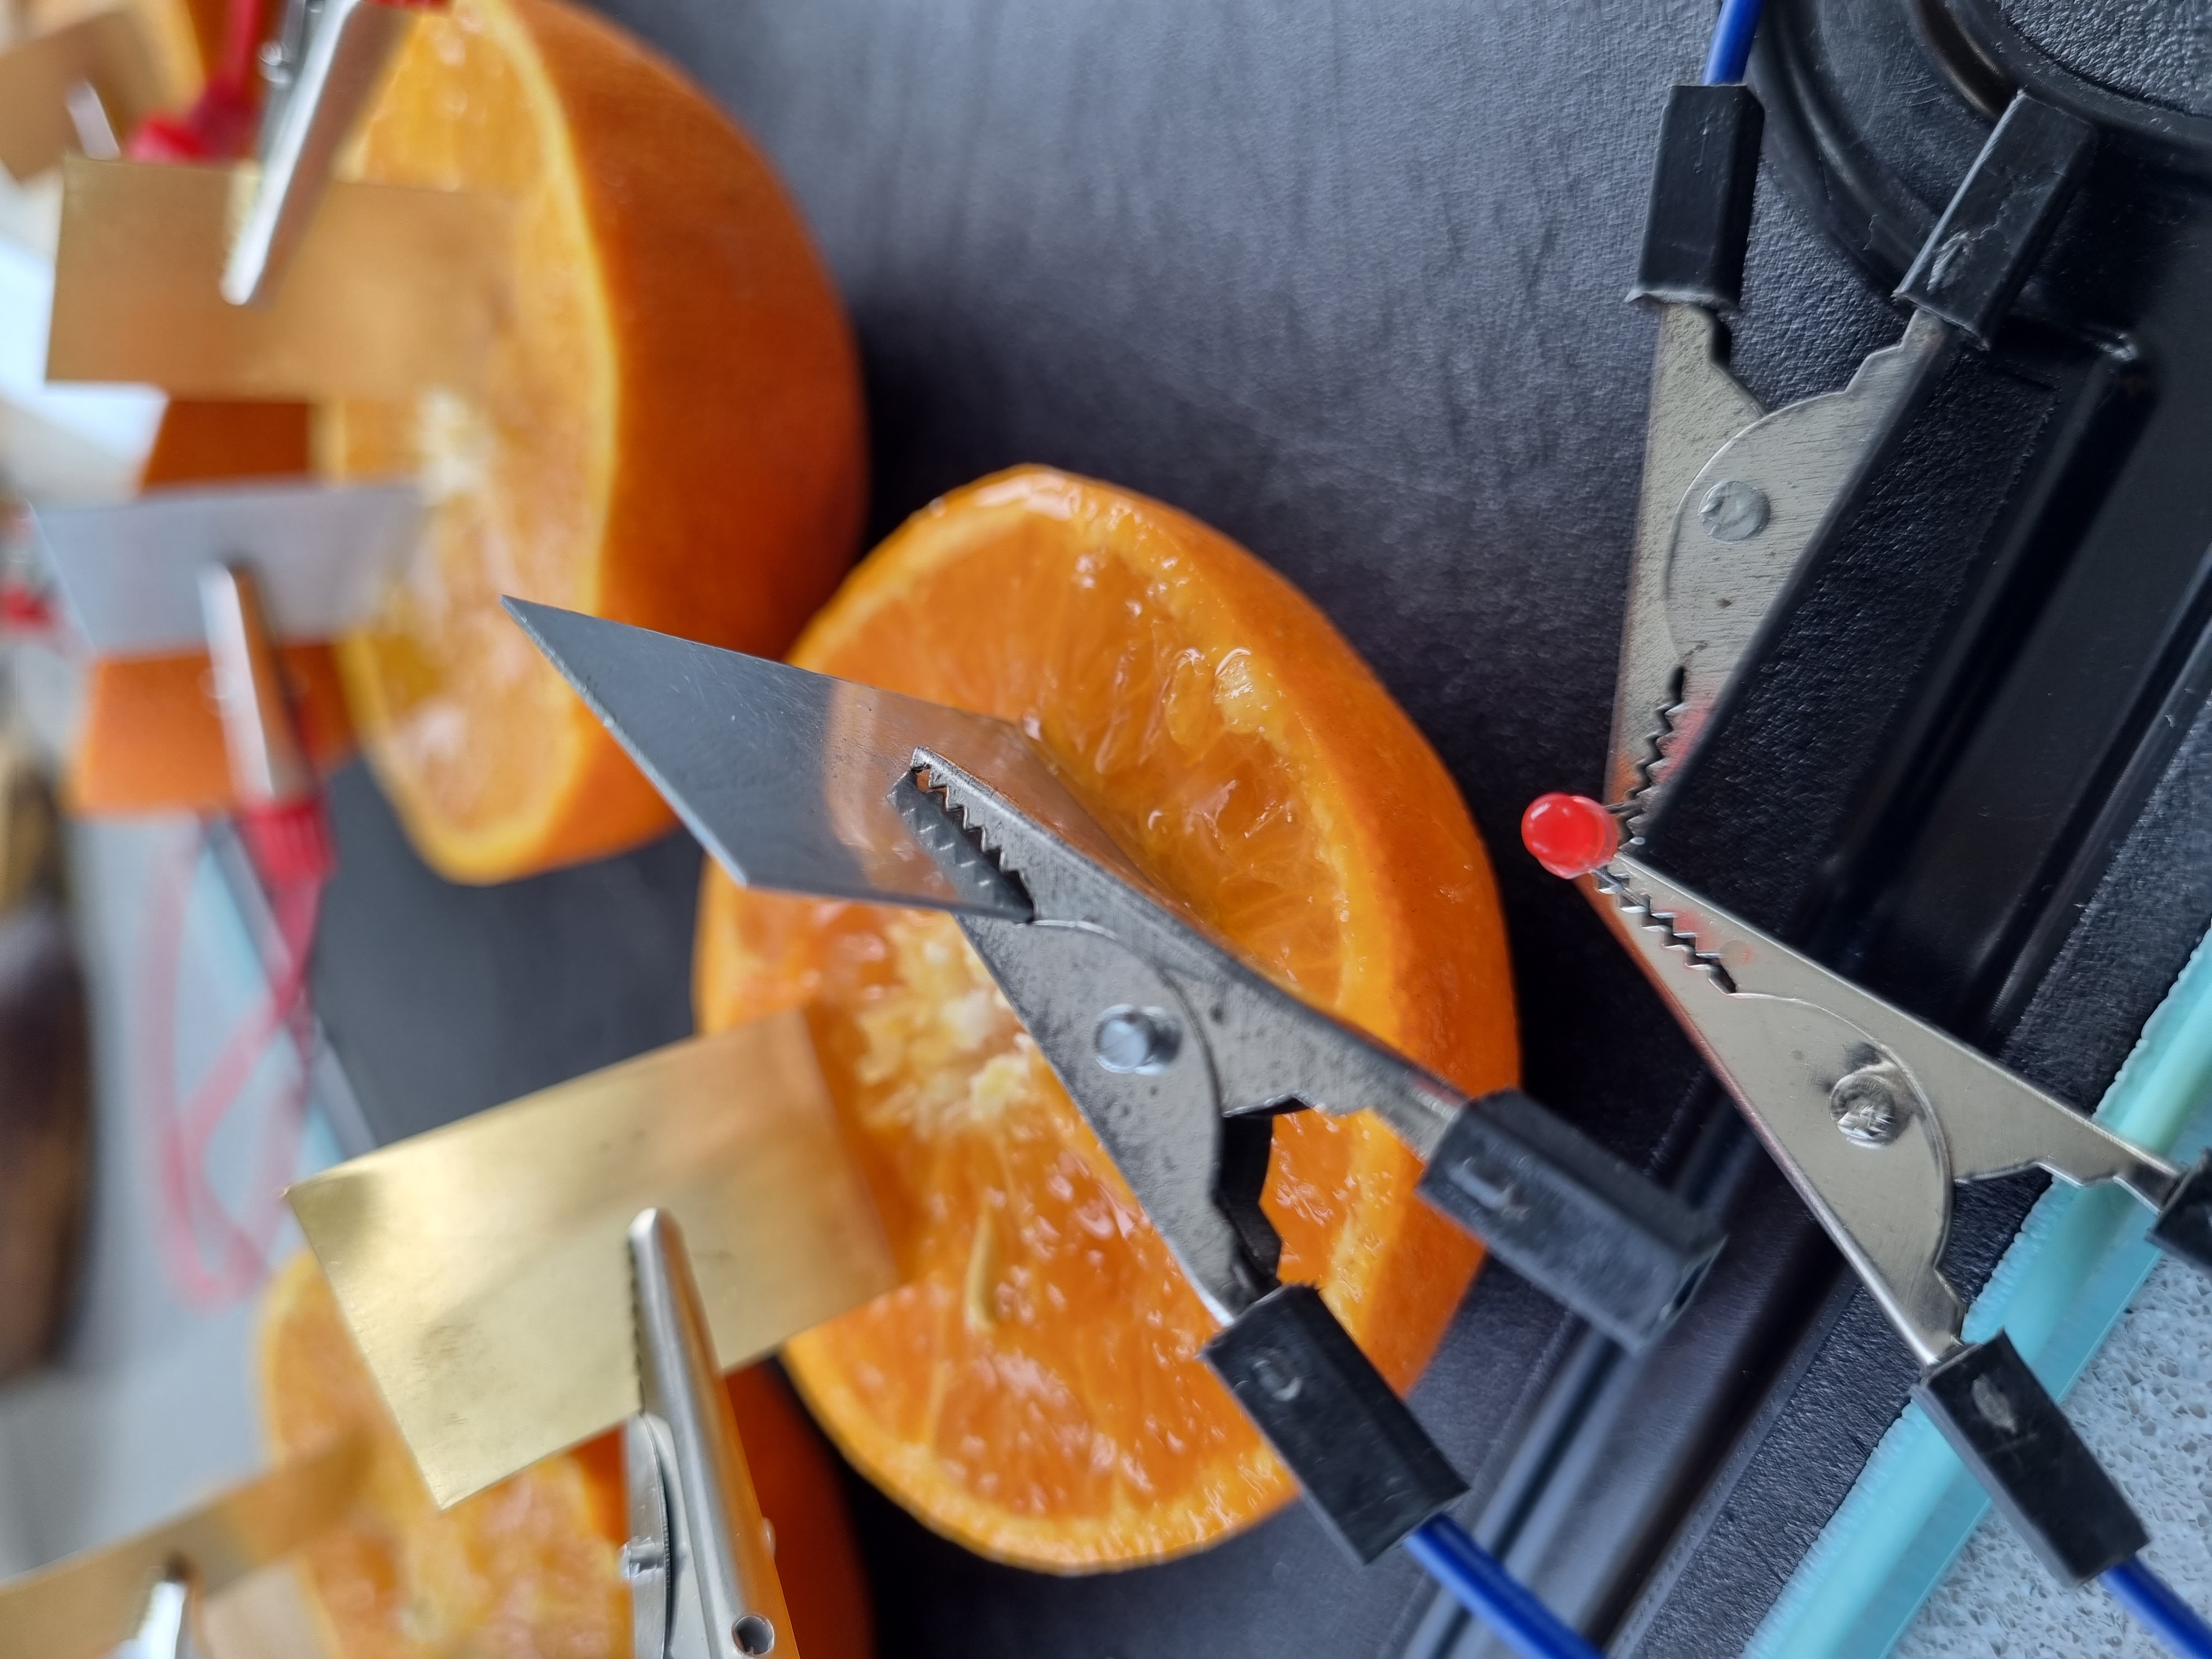 appelsin med batteriledninger